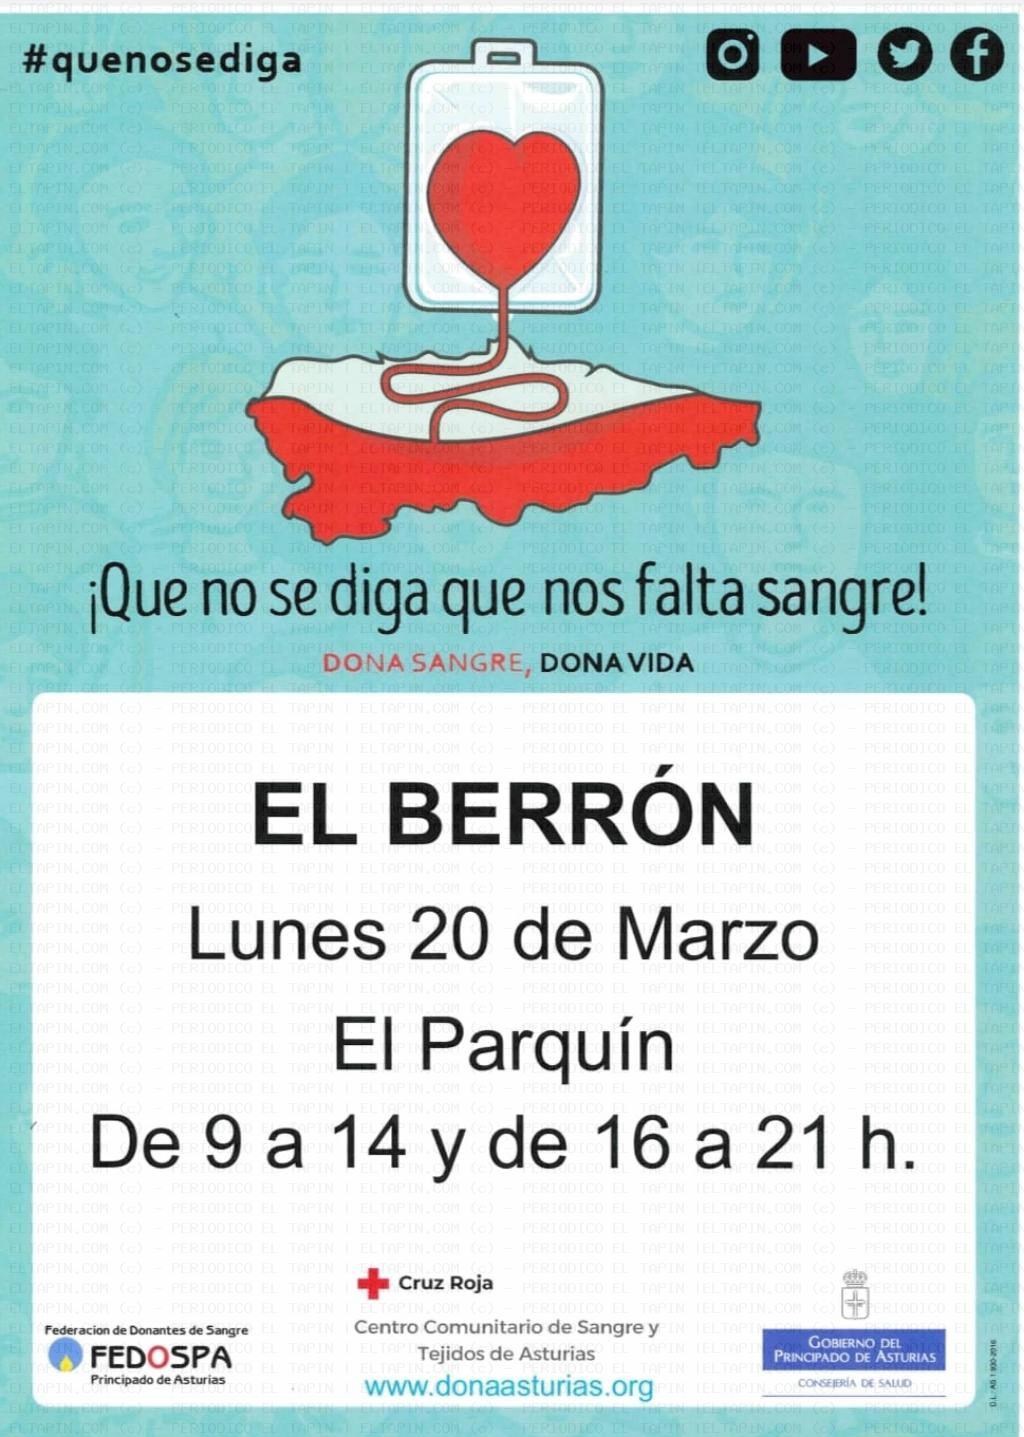 El Tapin - El autobús para la donación de sangre se encontrará en El Berrón el lunes 20 de marzo